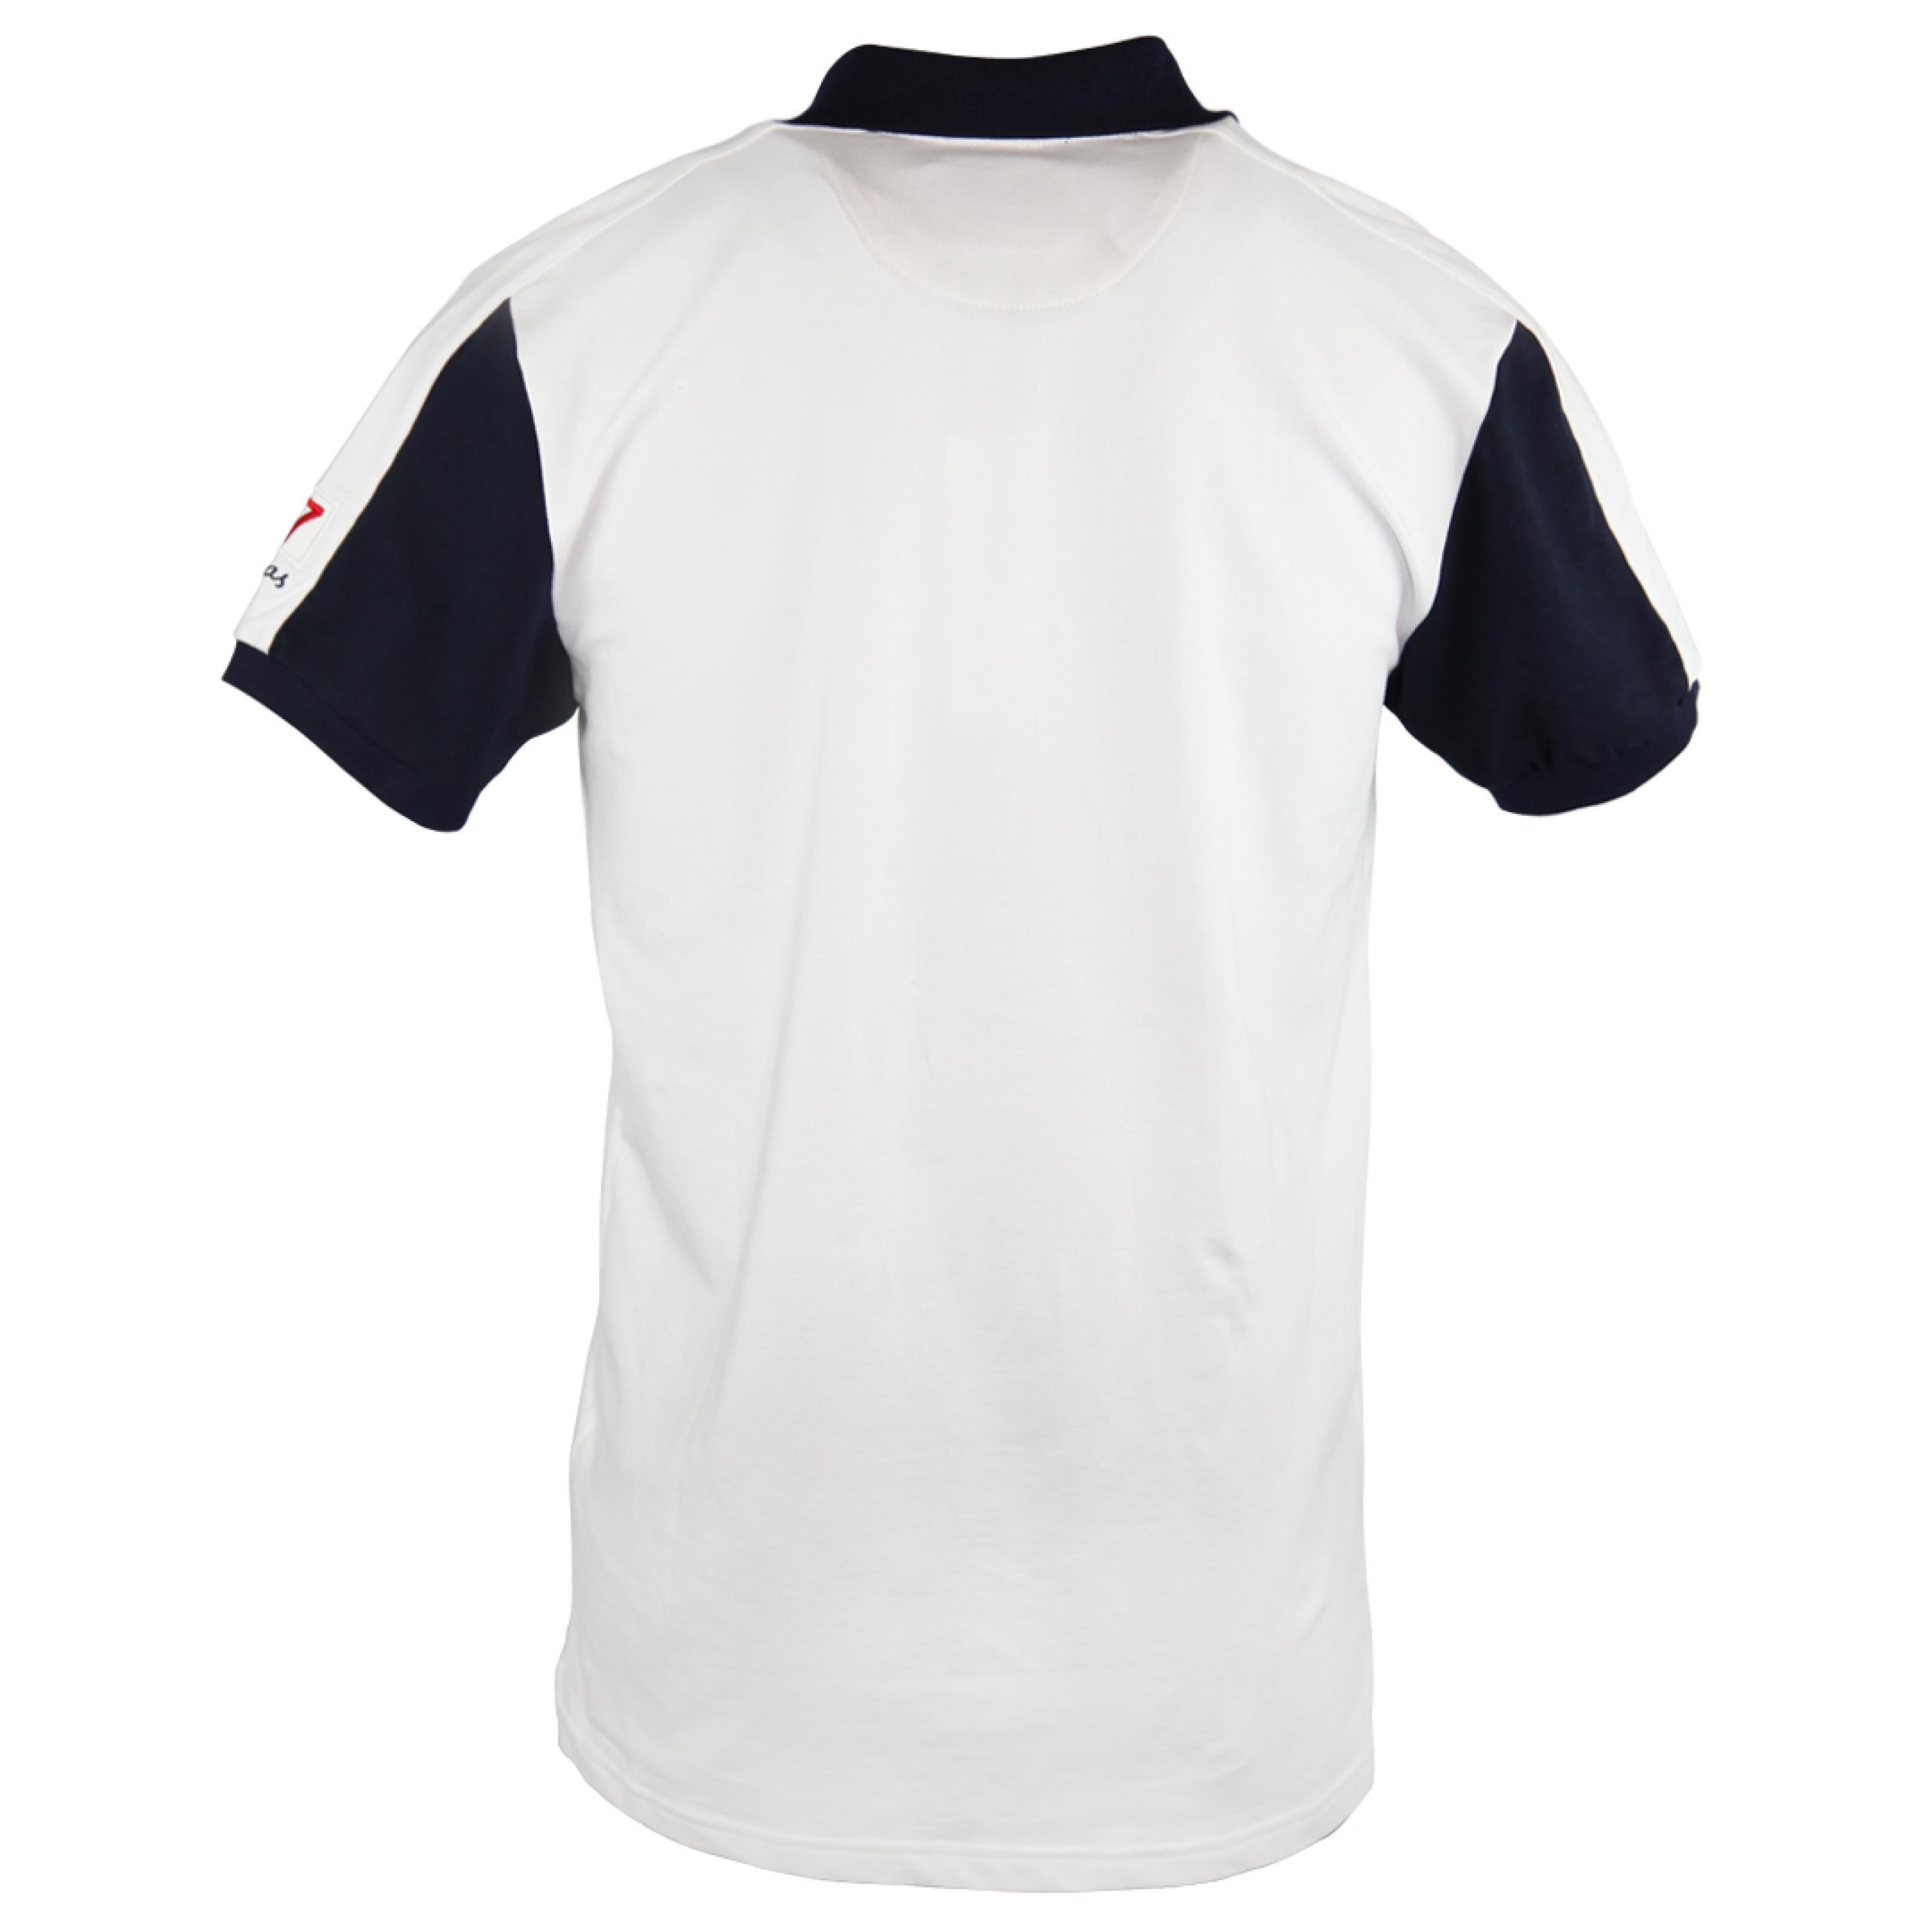 Buy Zeekas Mens Brisco Park Polo Shirt Brand Logo Design USA